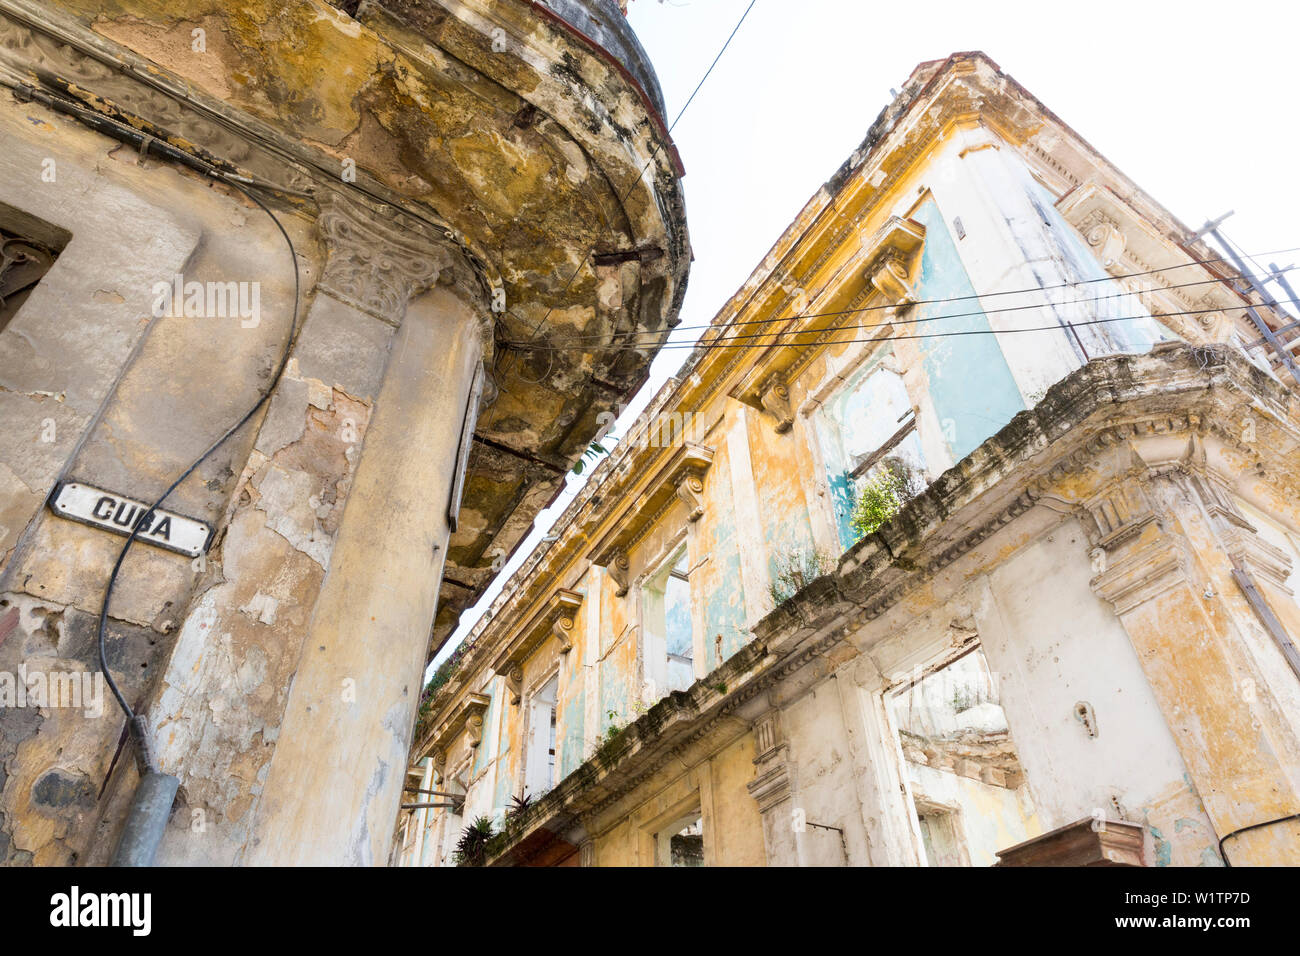 Degrado e declino di una delle città più belle del mondo, edifici fatiscenti nel centro, la città vecchia, La Habana Vieja, famiglia viaggi a Cuba Foto Stock